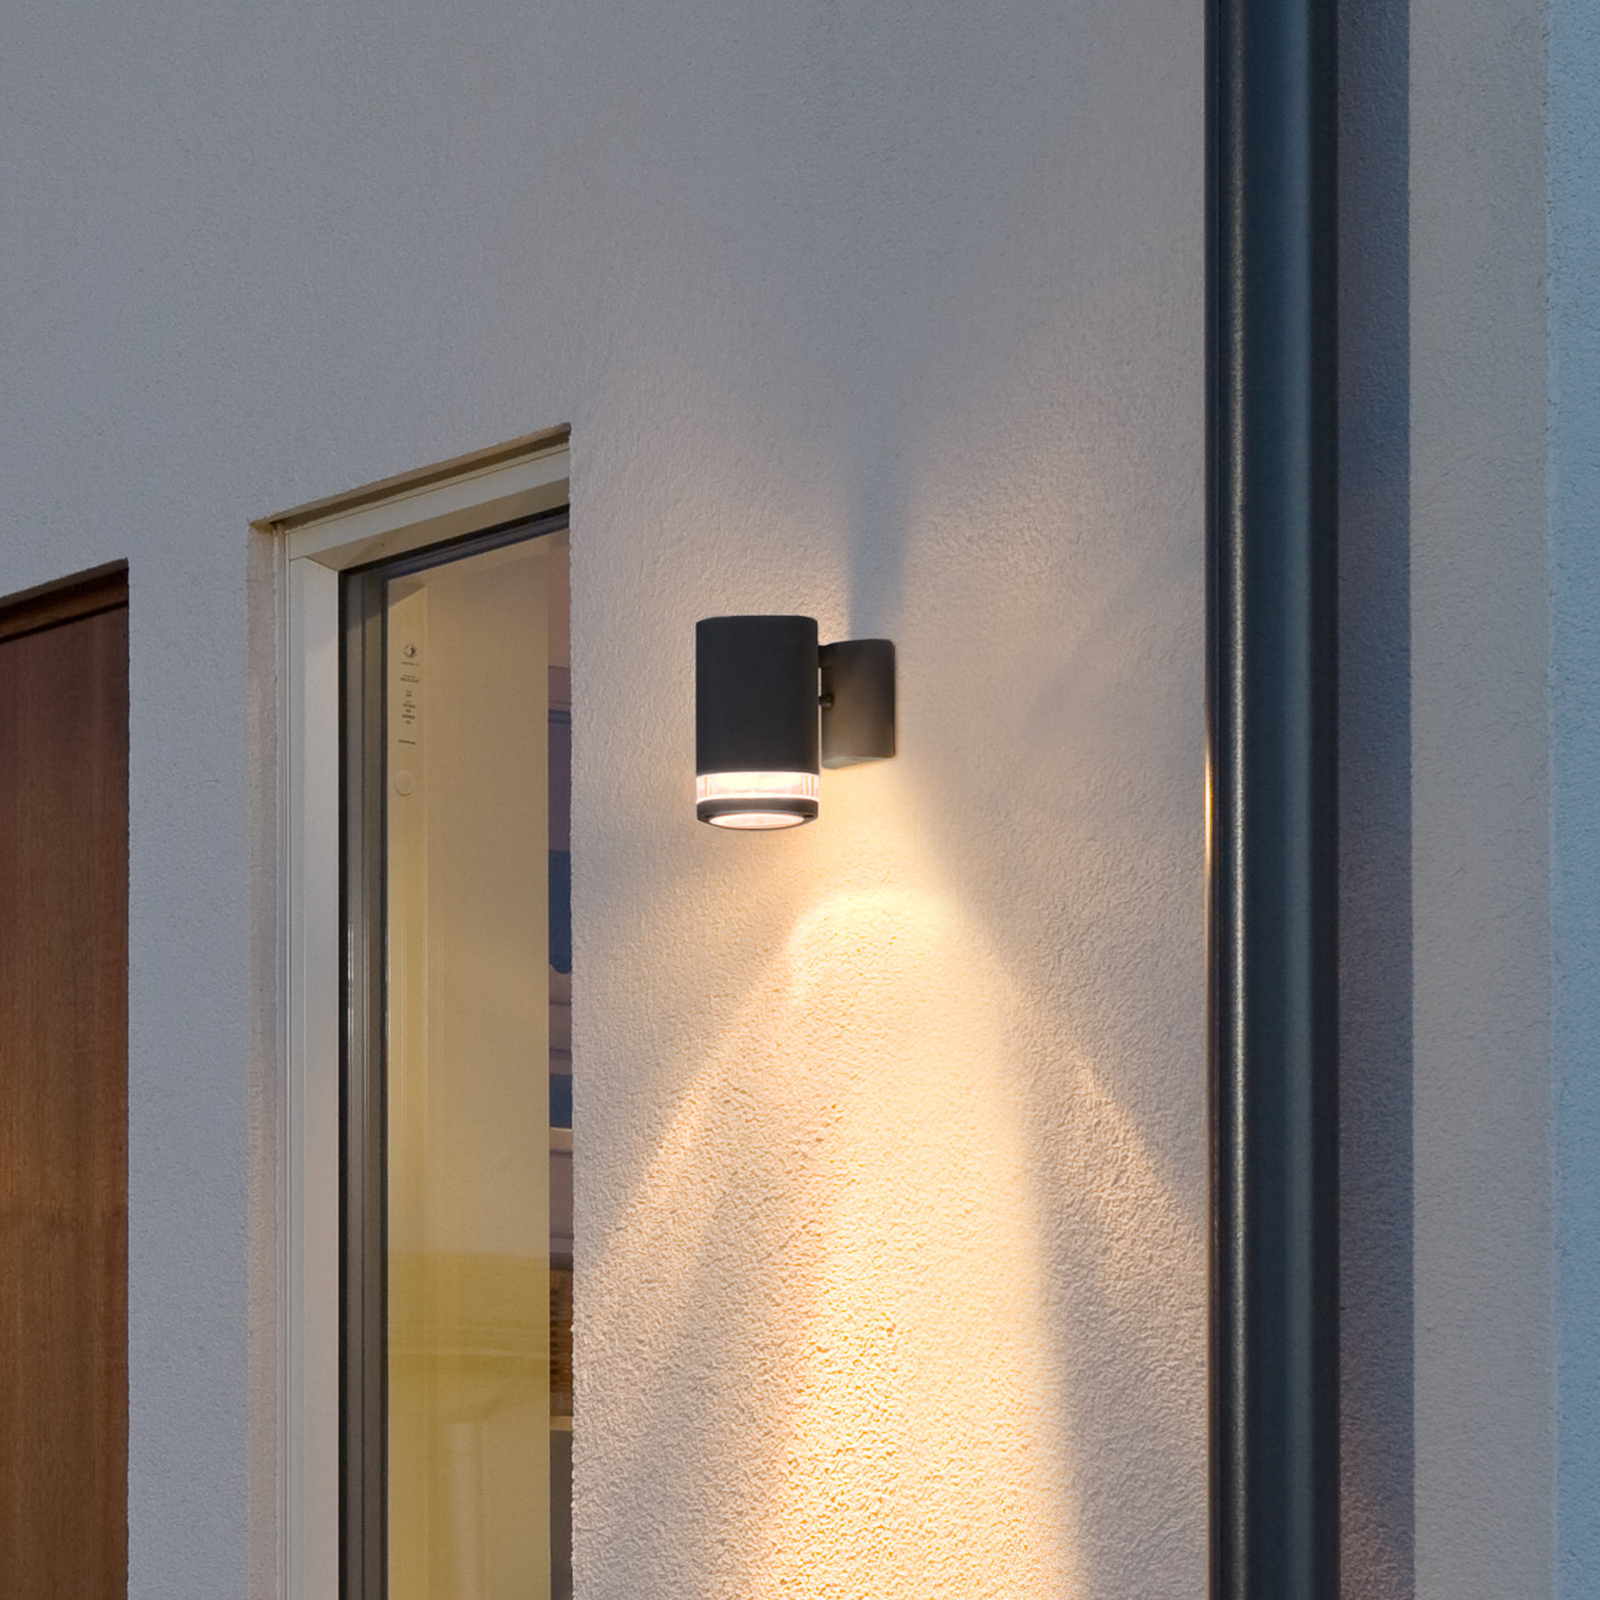 Vanjska zidna svjetiljka Modena s prorezom, 1 žarulja. crno